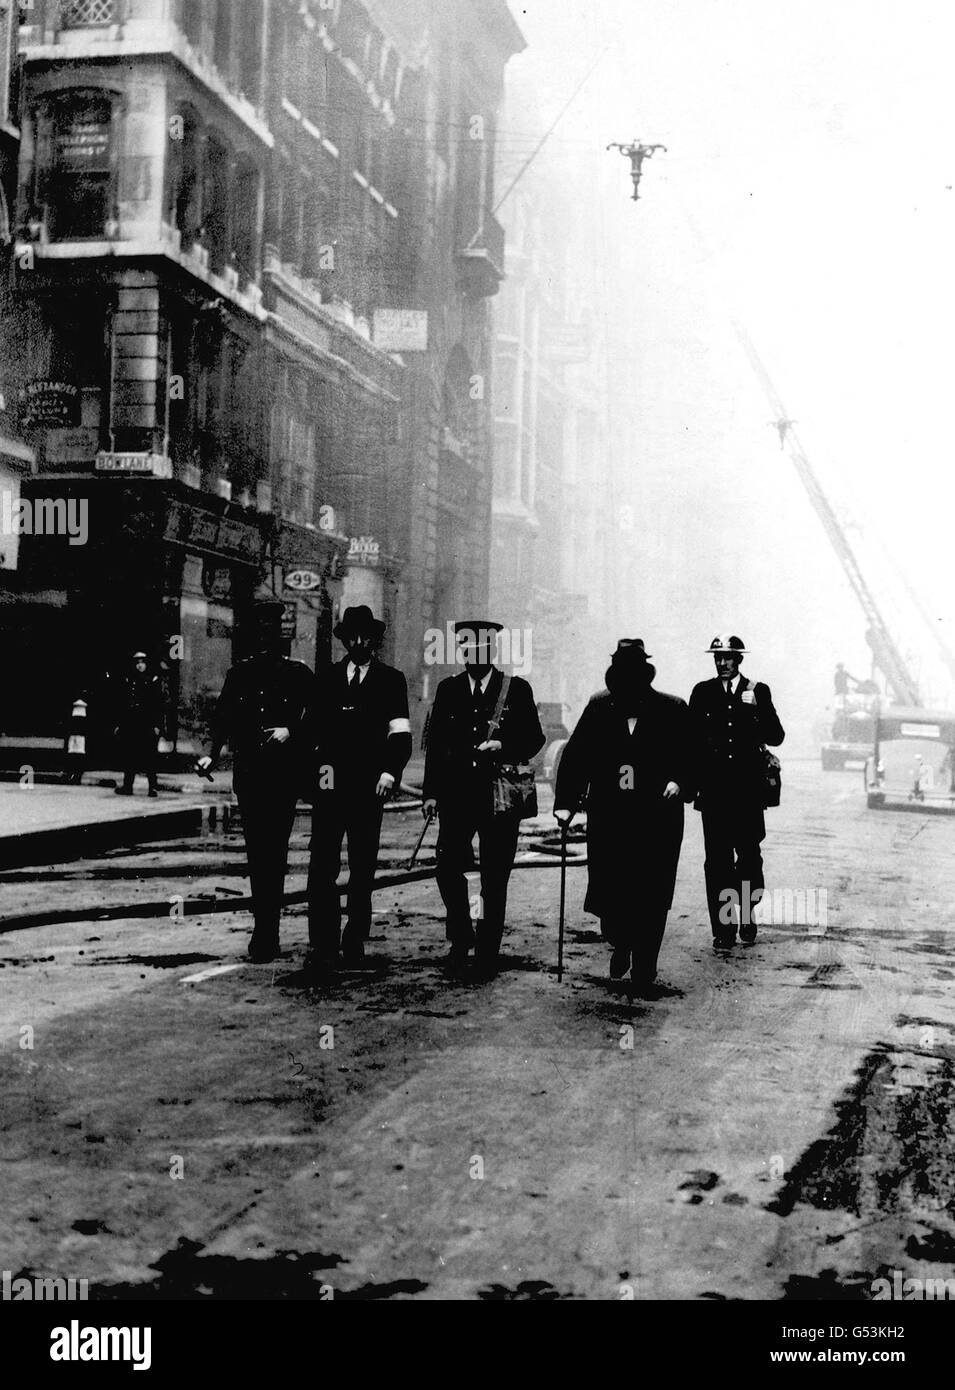 Le Premier ministre Winston Churchill (deuxième à partir de la droite) lors d'une visite des dommages causés par un raid aérien de nuit à Cheapside, au-delà de St.Mary-le-Bow, dans le centre de Londres, au cours de la deuxième Guerre mondiale Blitz. Banque D'Images